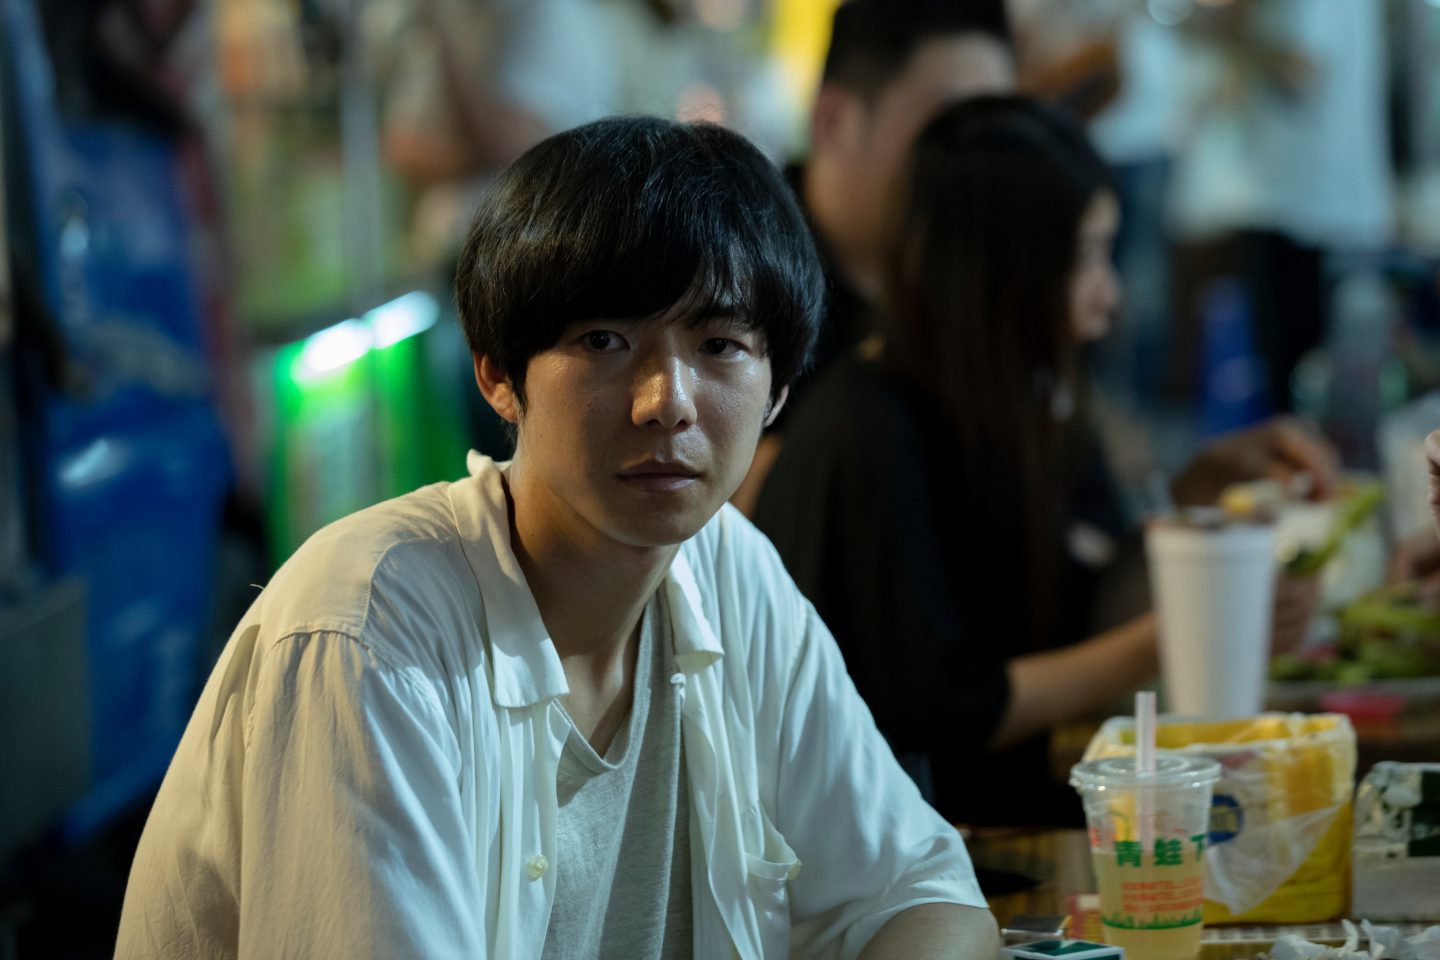 ぼくは日本人 台湾人 二つの故郷をルーツに持つ青年の複雑な心を表現した 中国出身の俳優水間ロンが 燕 Yan を語る 映画 Banger